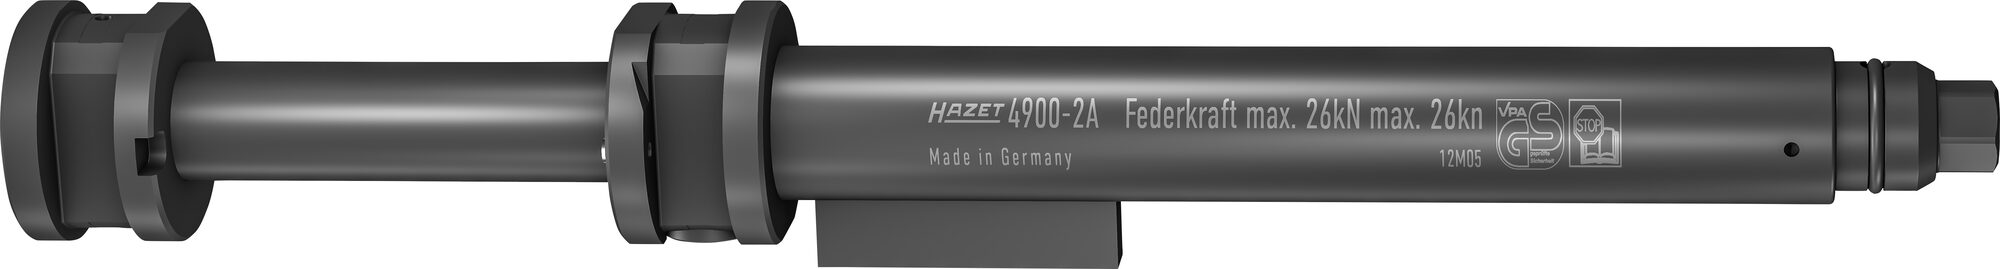 HAZET Sicherheits Federspanner-Grundgerät 4900-2A